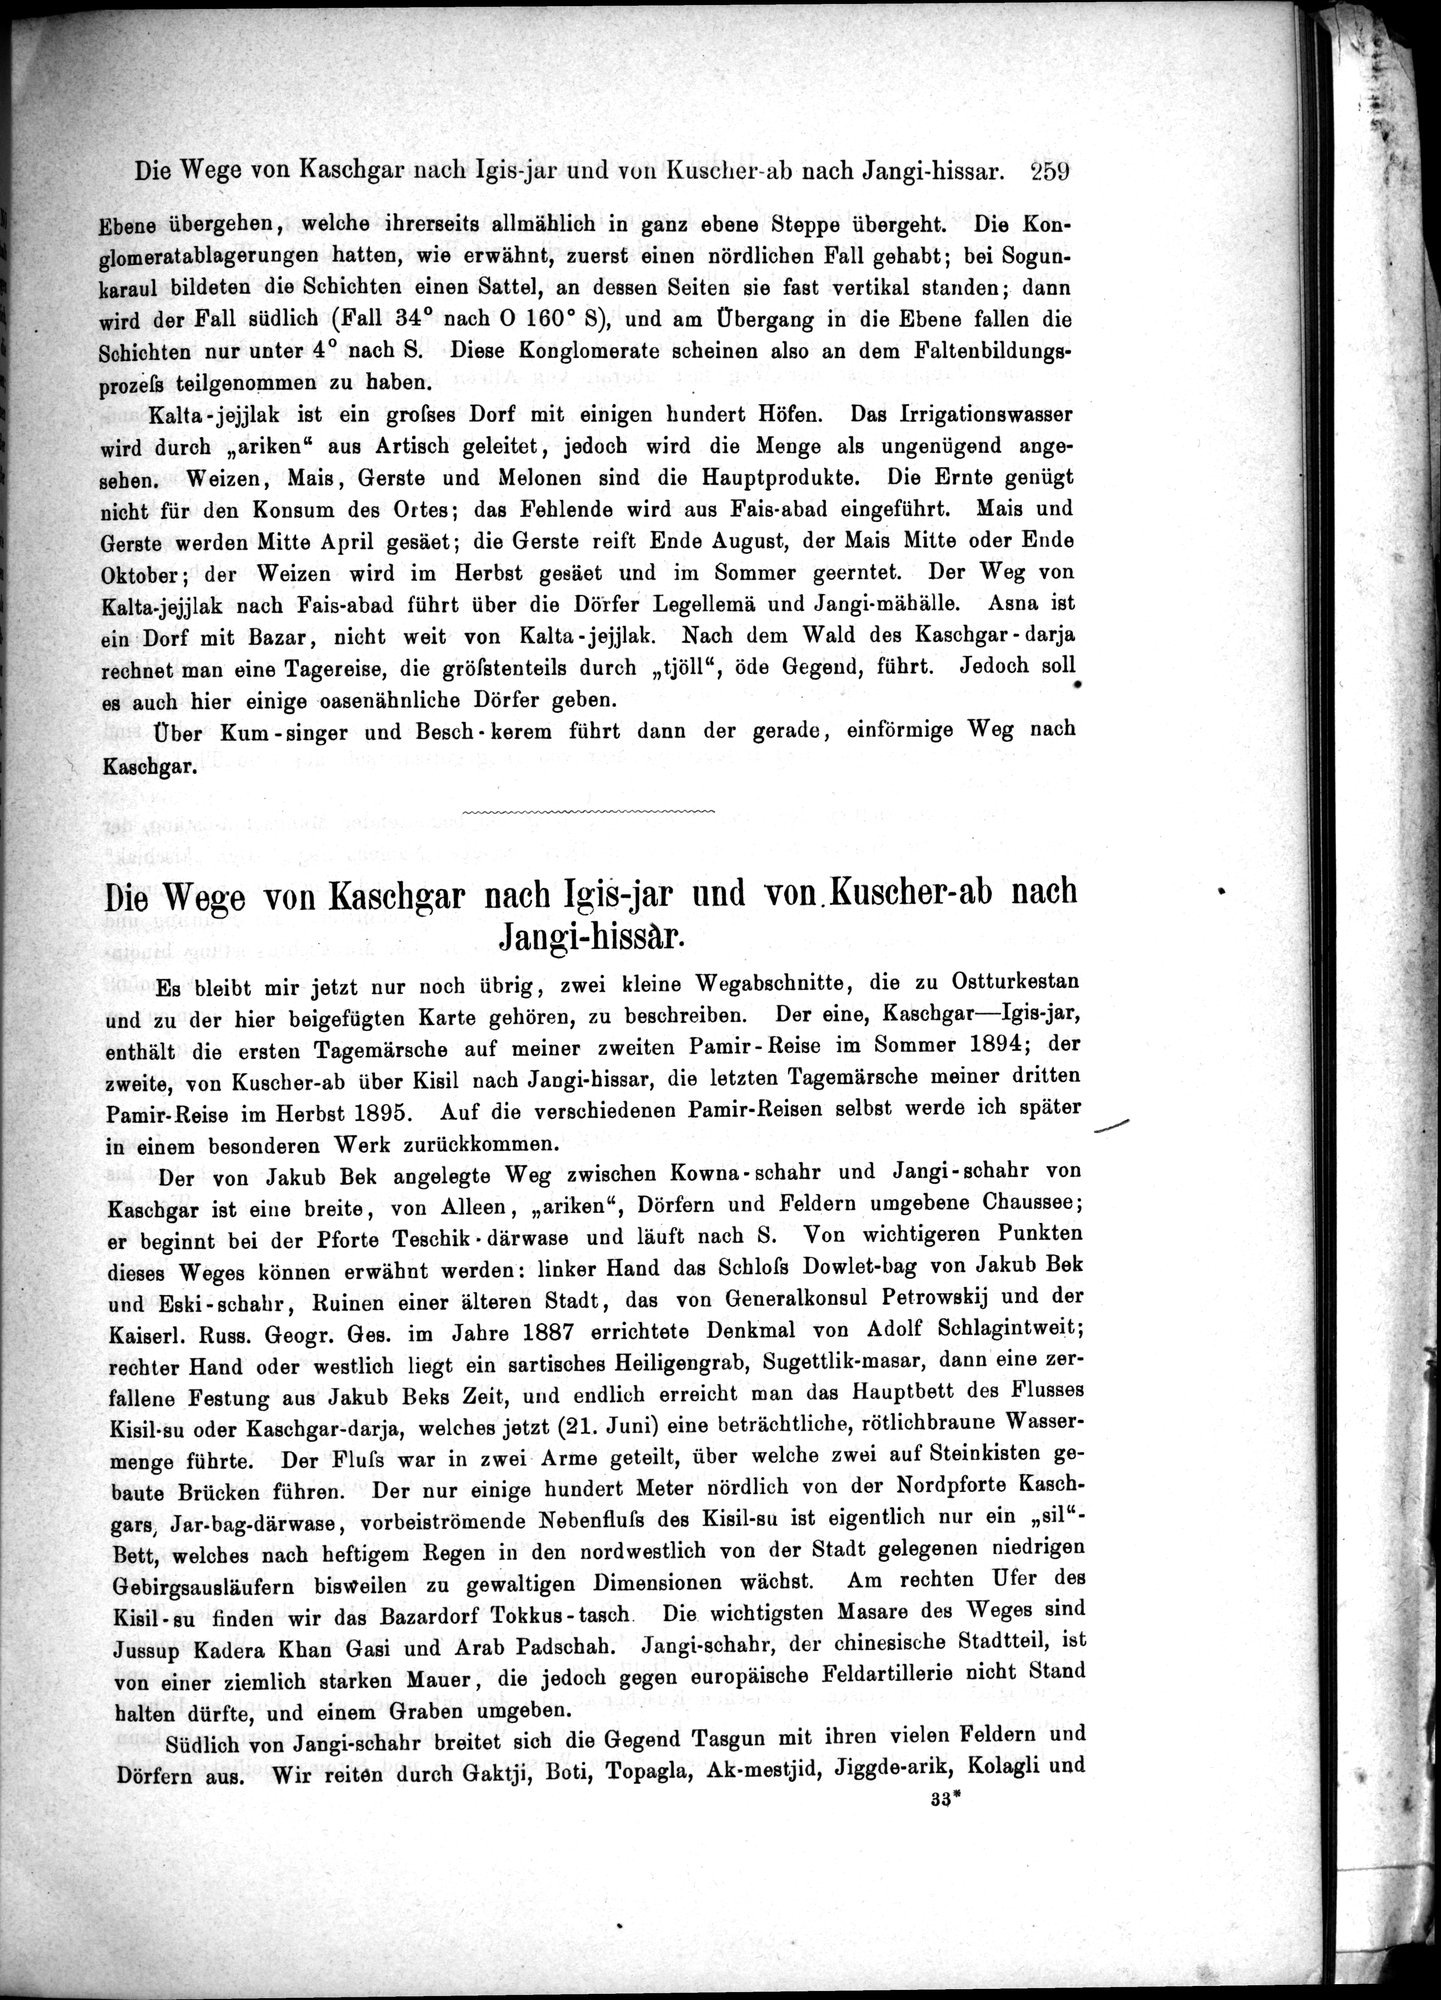 Die Geographische-Wissenschaftlichen Ergebnisse meiner Reisen in Zentralasien, 1894-1897 : vol.1 / Page 271 (Grayscale High Resolution Image)